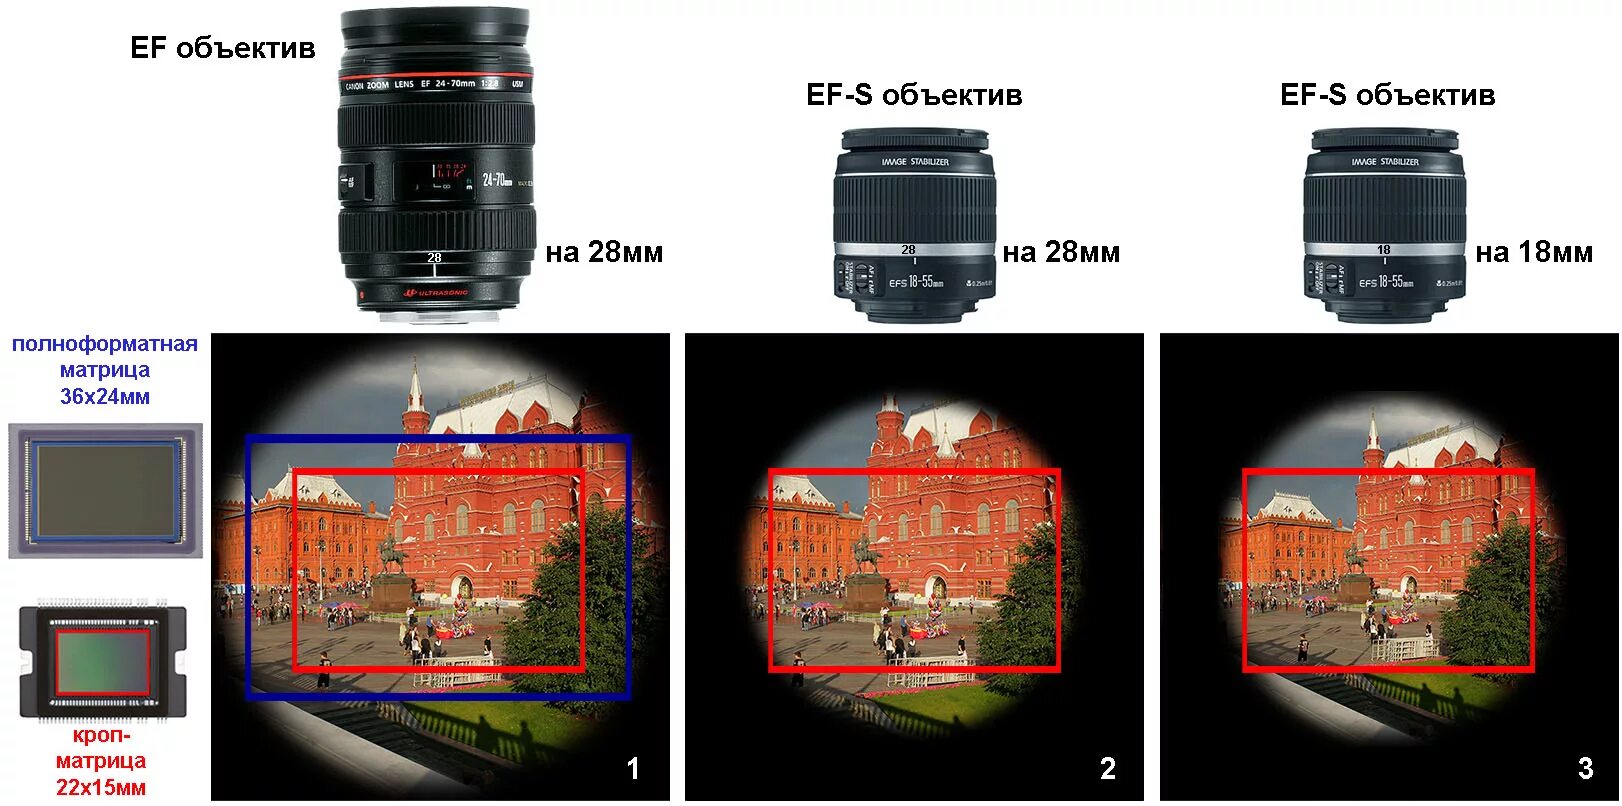 35 и 3 сравнить. Кроп камеры Canon. Полнокадровые объективы для Nikon. Матрица фотоаппарата кроп. Объективы мегапиксельные размер матрицы 1/1.8.